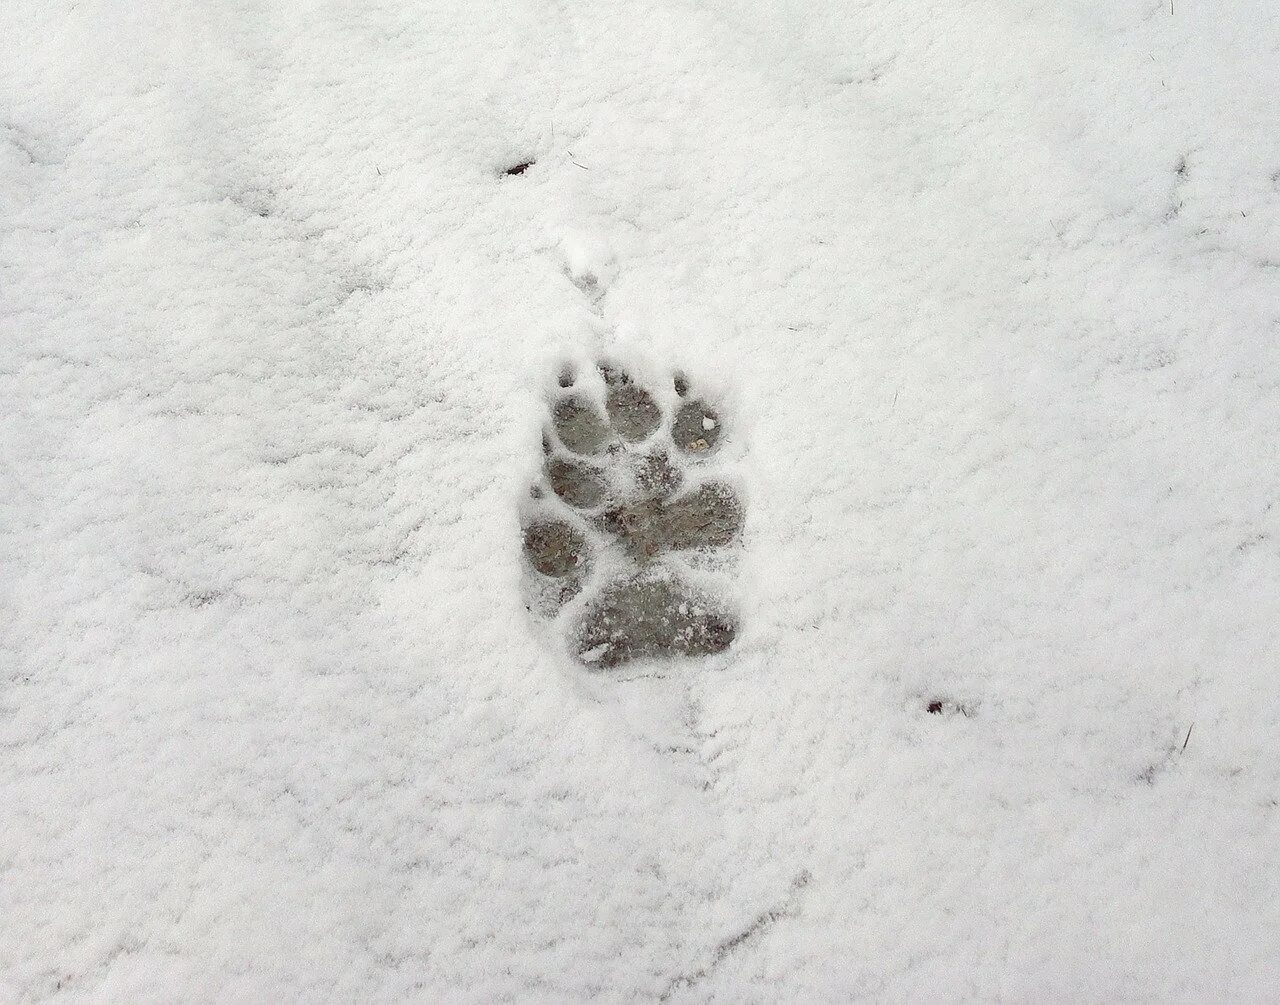 Видны заячьи следы. Следы животных на снегу. Следы лисы. Отпечатки следов животных на снегу. Следы собаки на снегу.